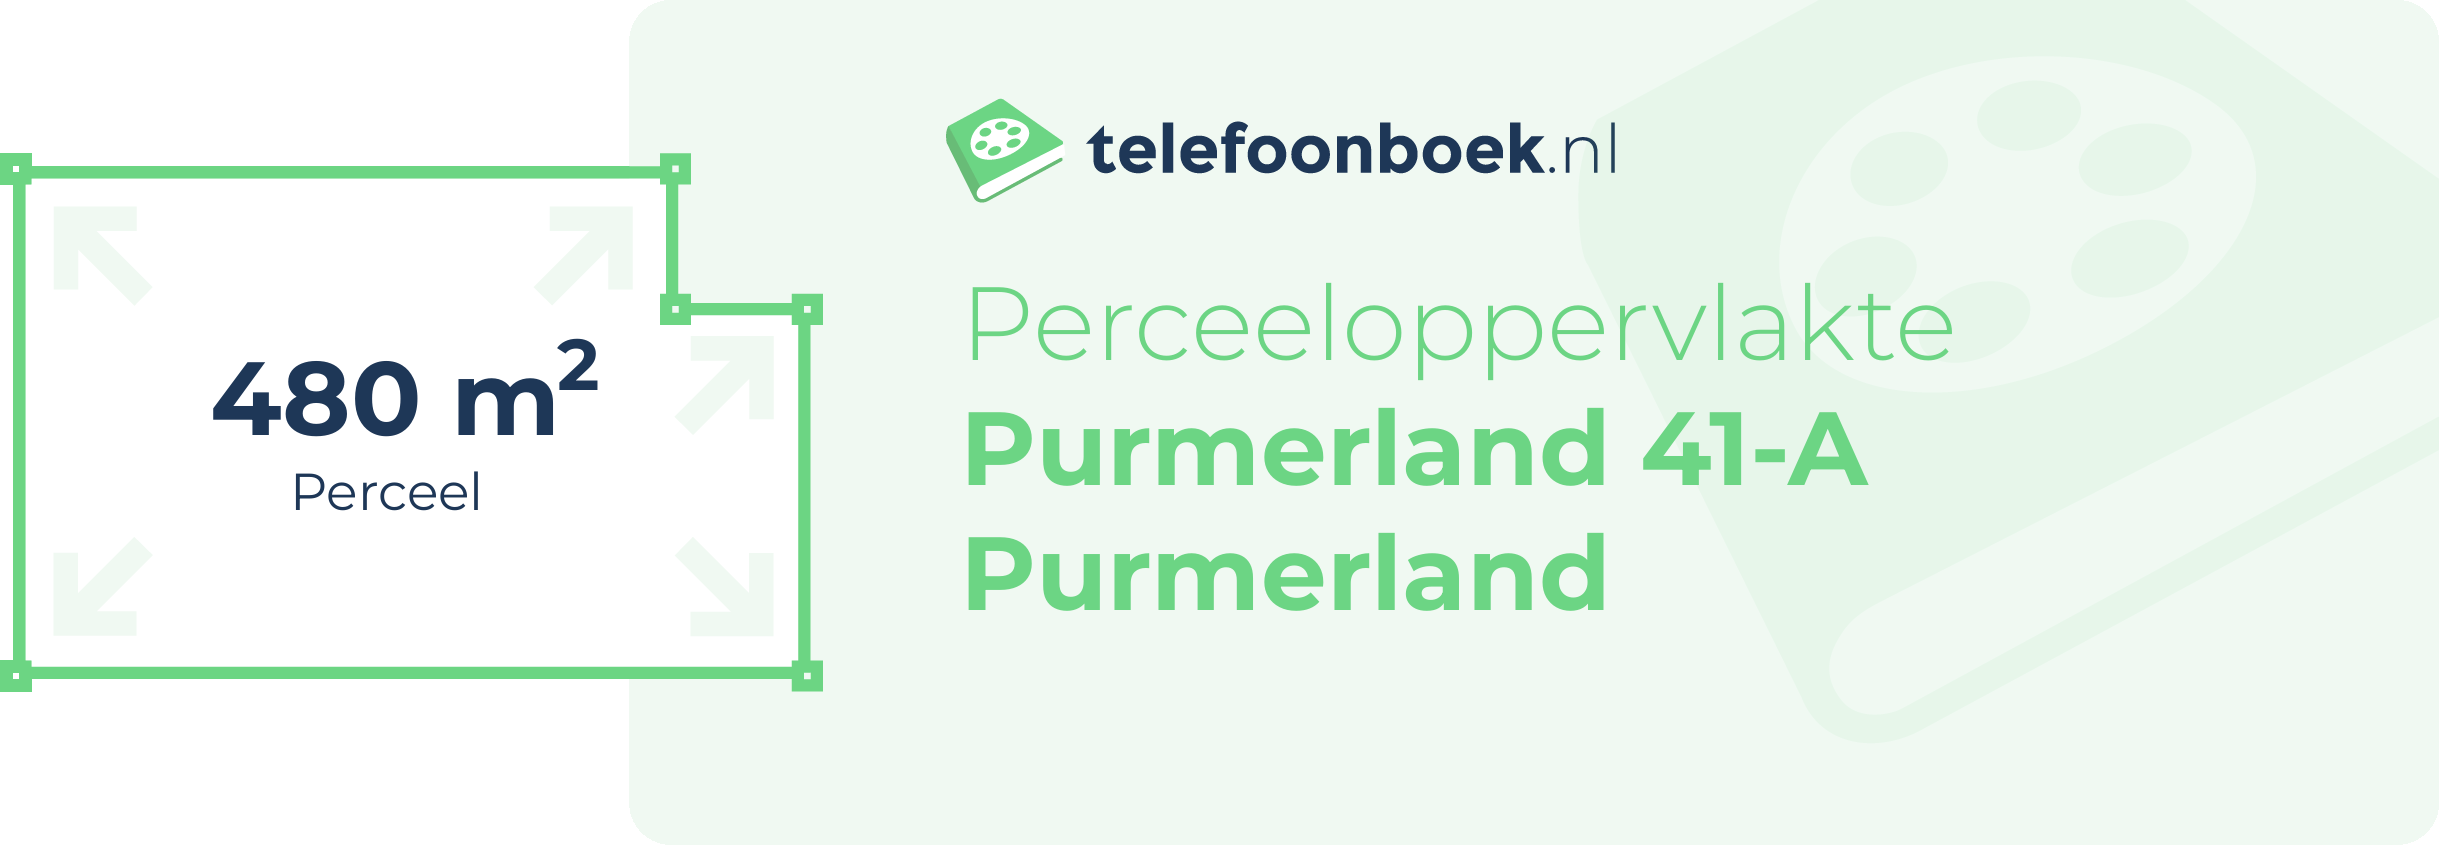 Perceeloppervlakte Purmerland 41-A Purmerland